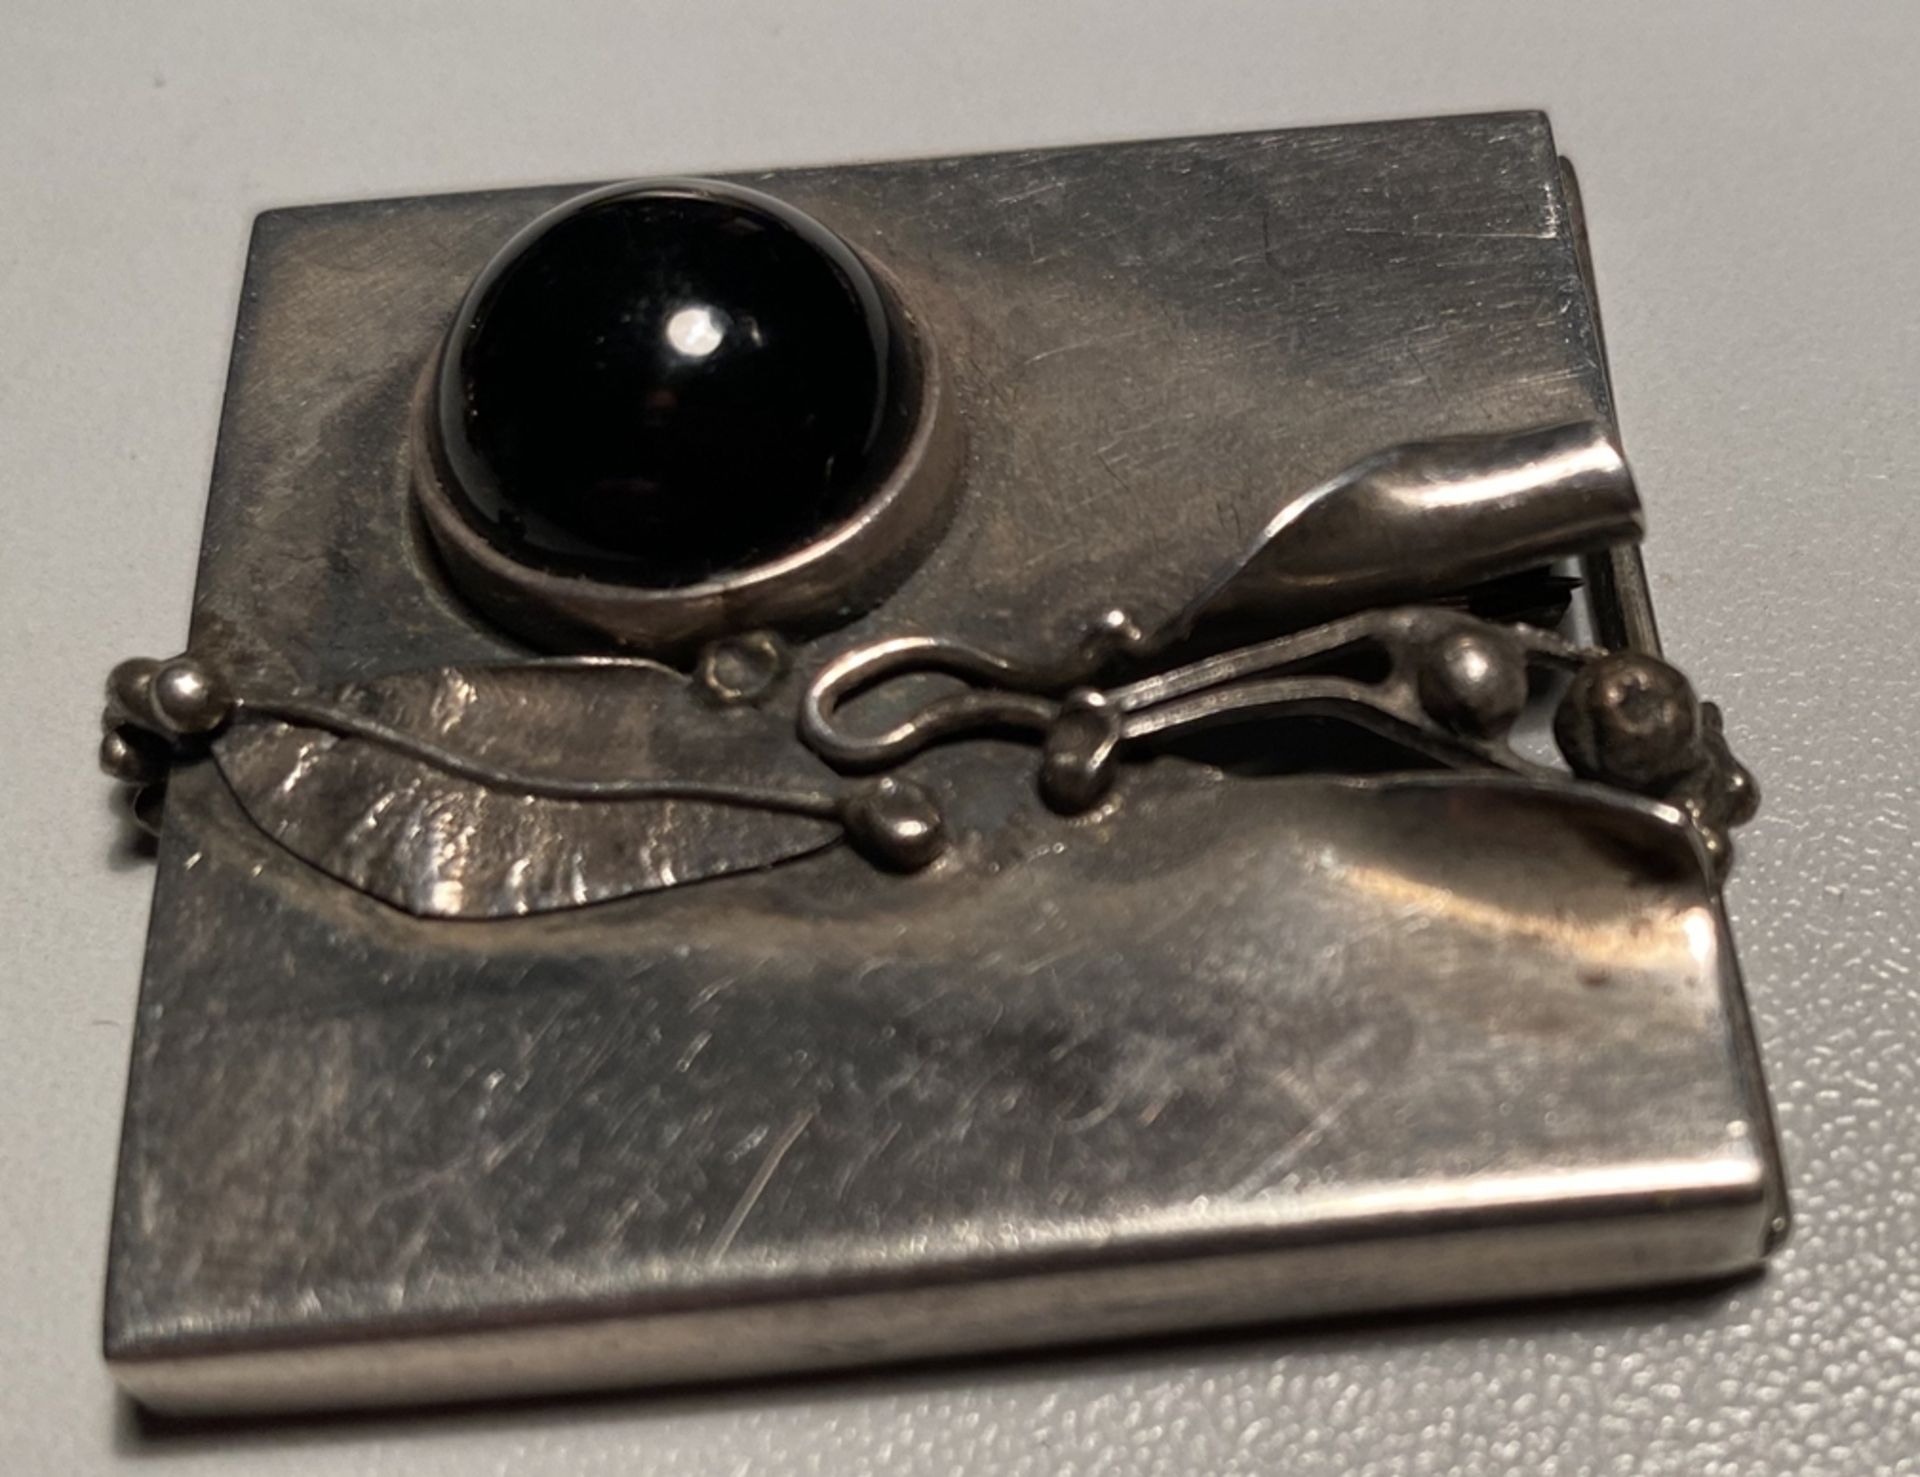 Silber Designerbrosche mit Onyx, auf Nadel gepunzt, 4x4 cm, 12,7 gr. - Bild 2 aus 3